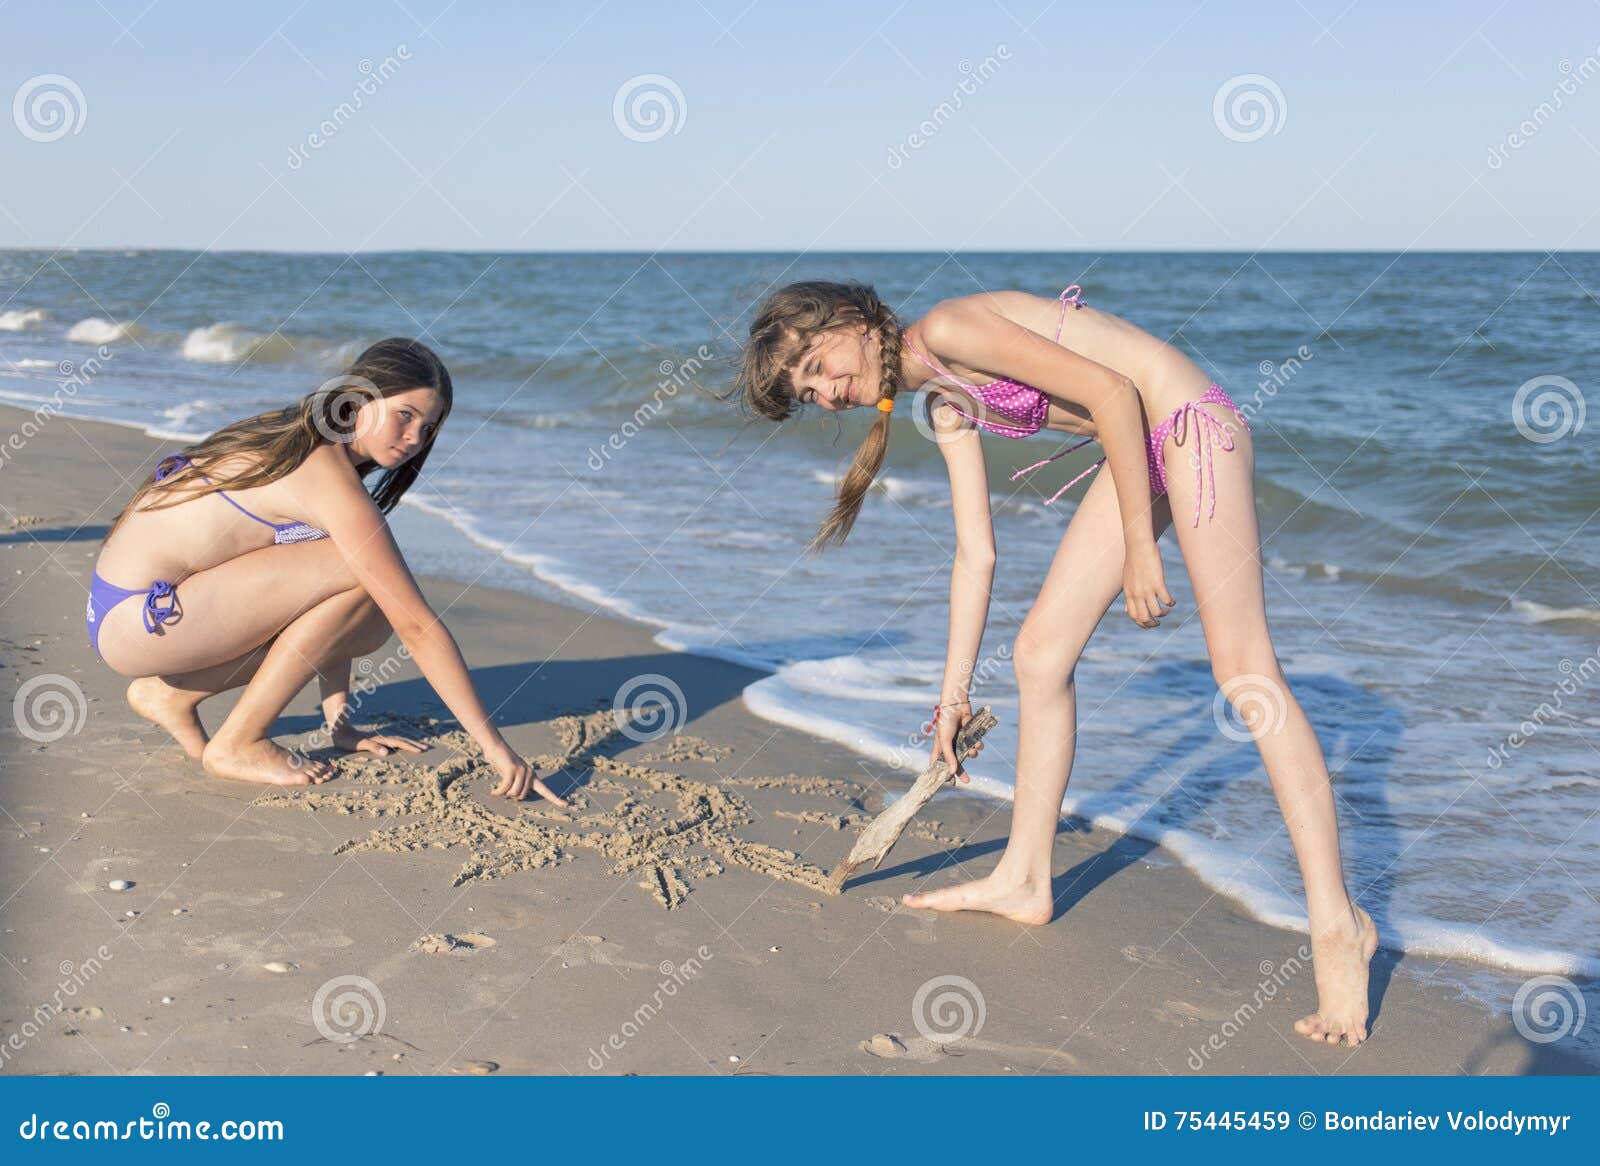 дети на голом пляже фото 86